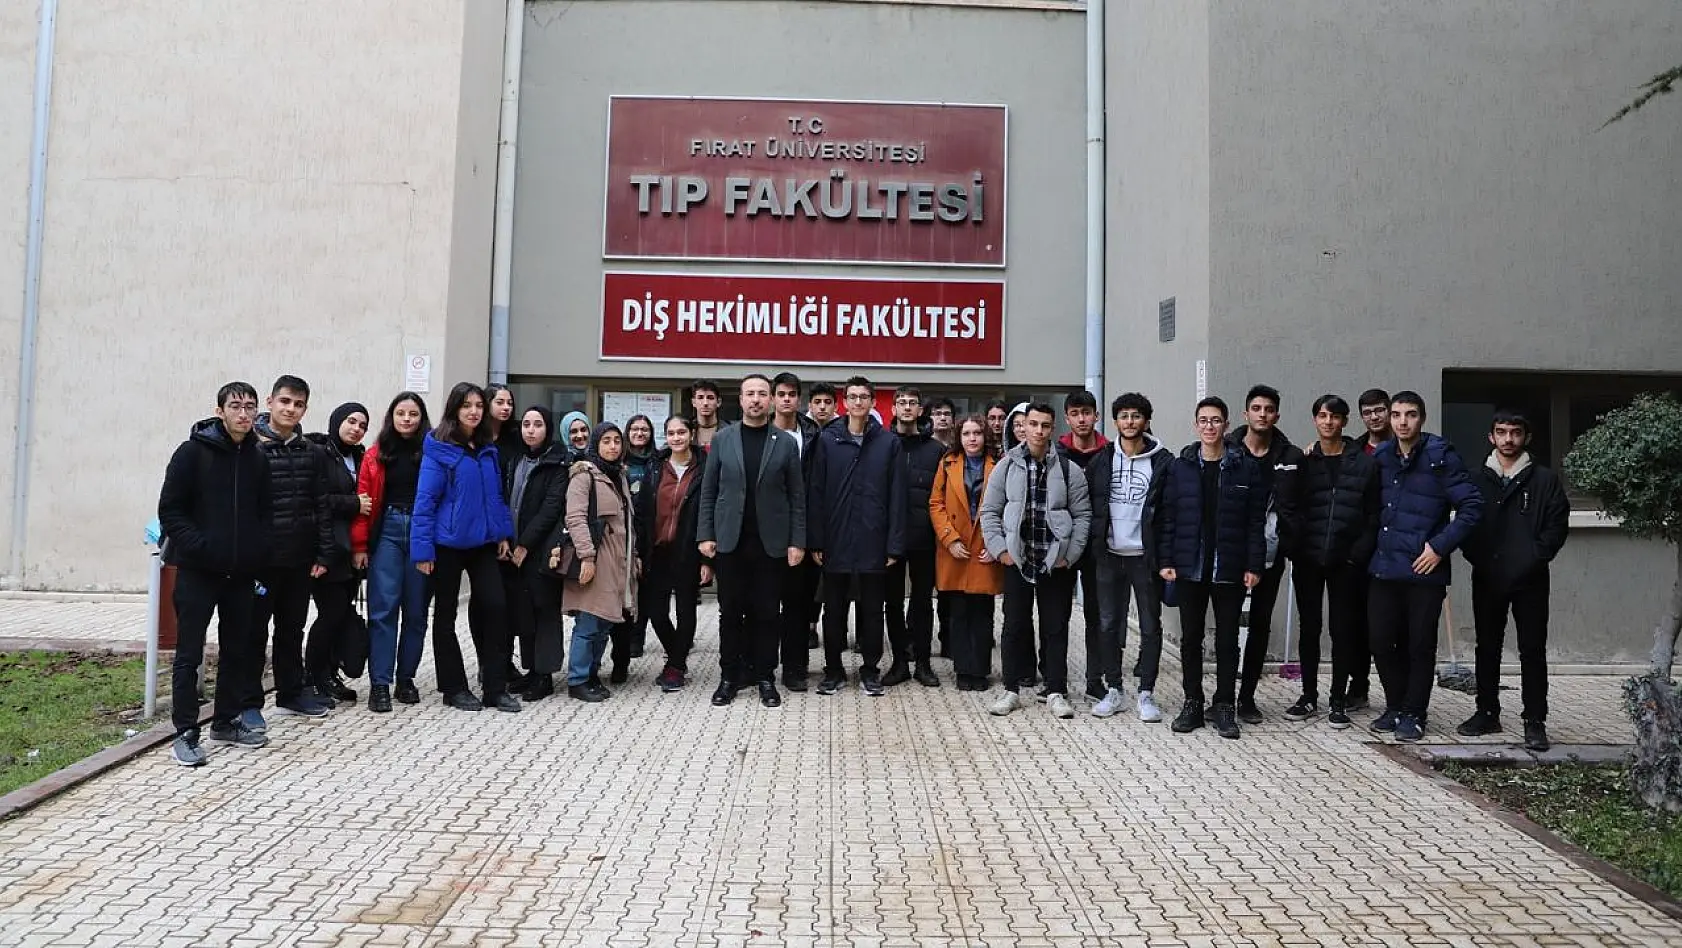 Fırat Üniversitesi'nin Lise Öğrencilerine Tanıtımı Devam Ediyor